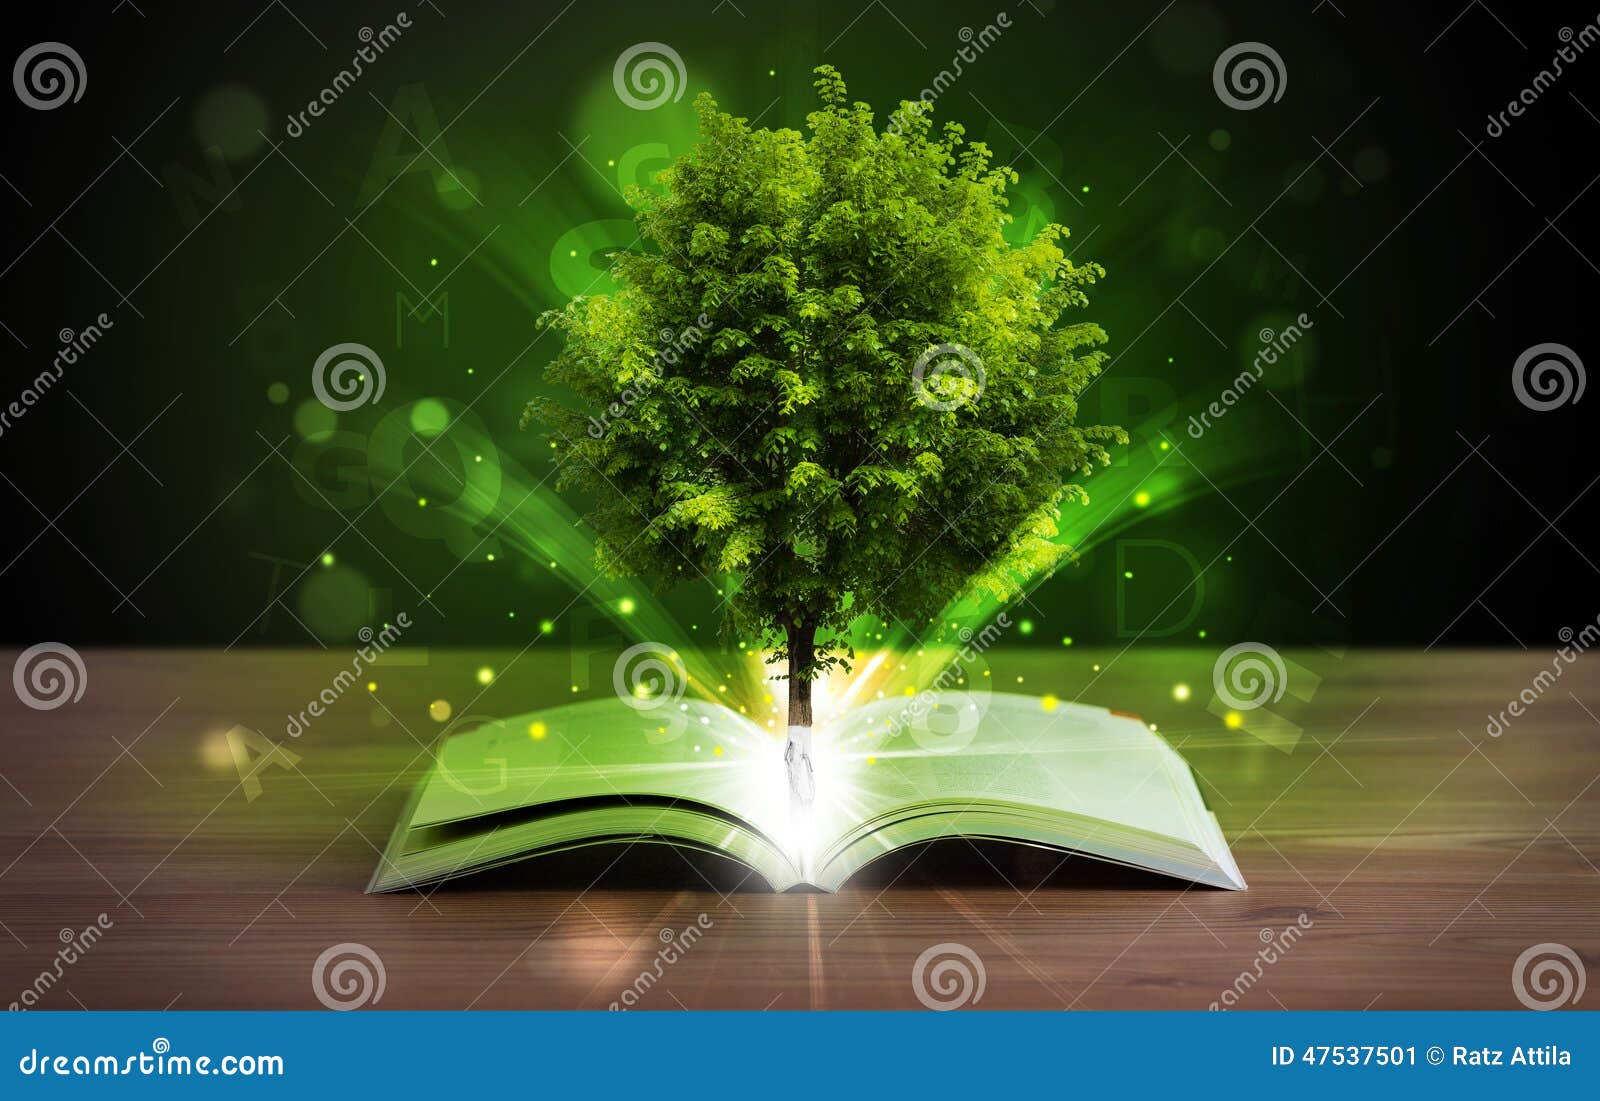 Libro Aperto Con L'albero Ed I Raggi Di Luce Verdi Magici Immagine ...